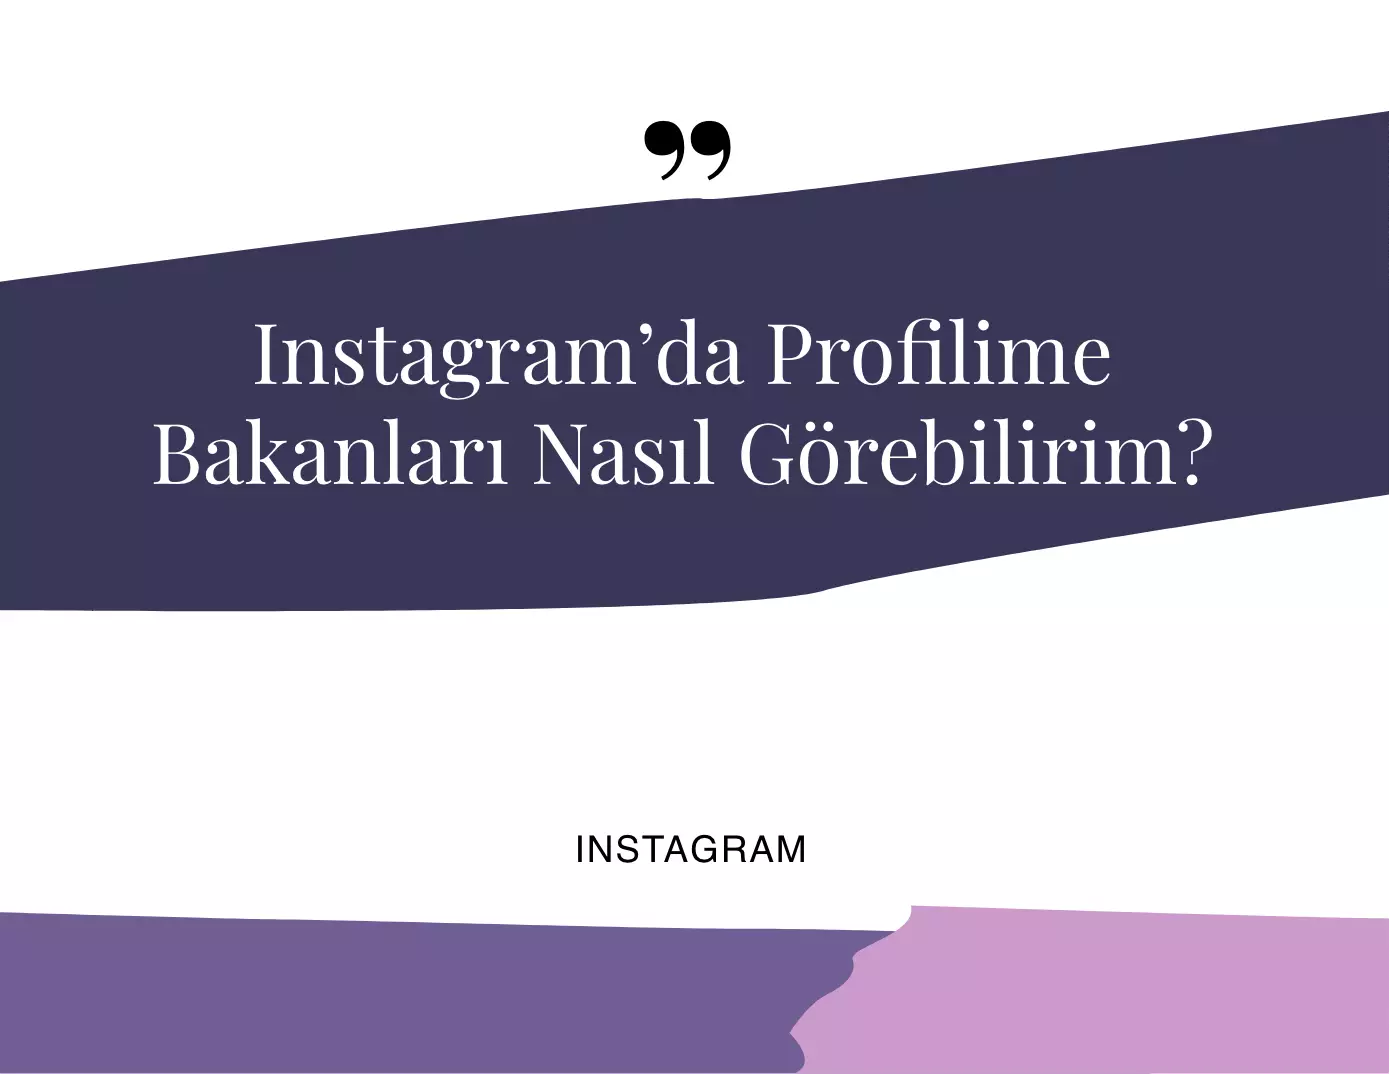 Instagram’da Profile Bakanları Görme